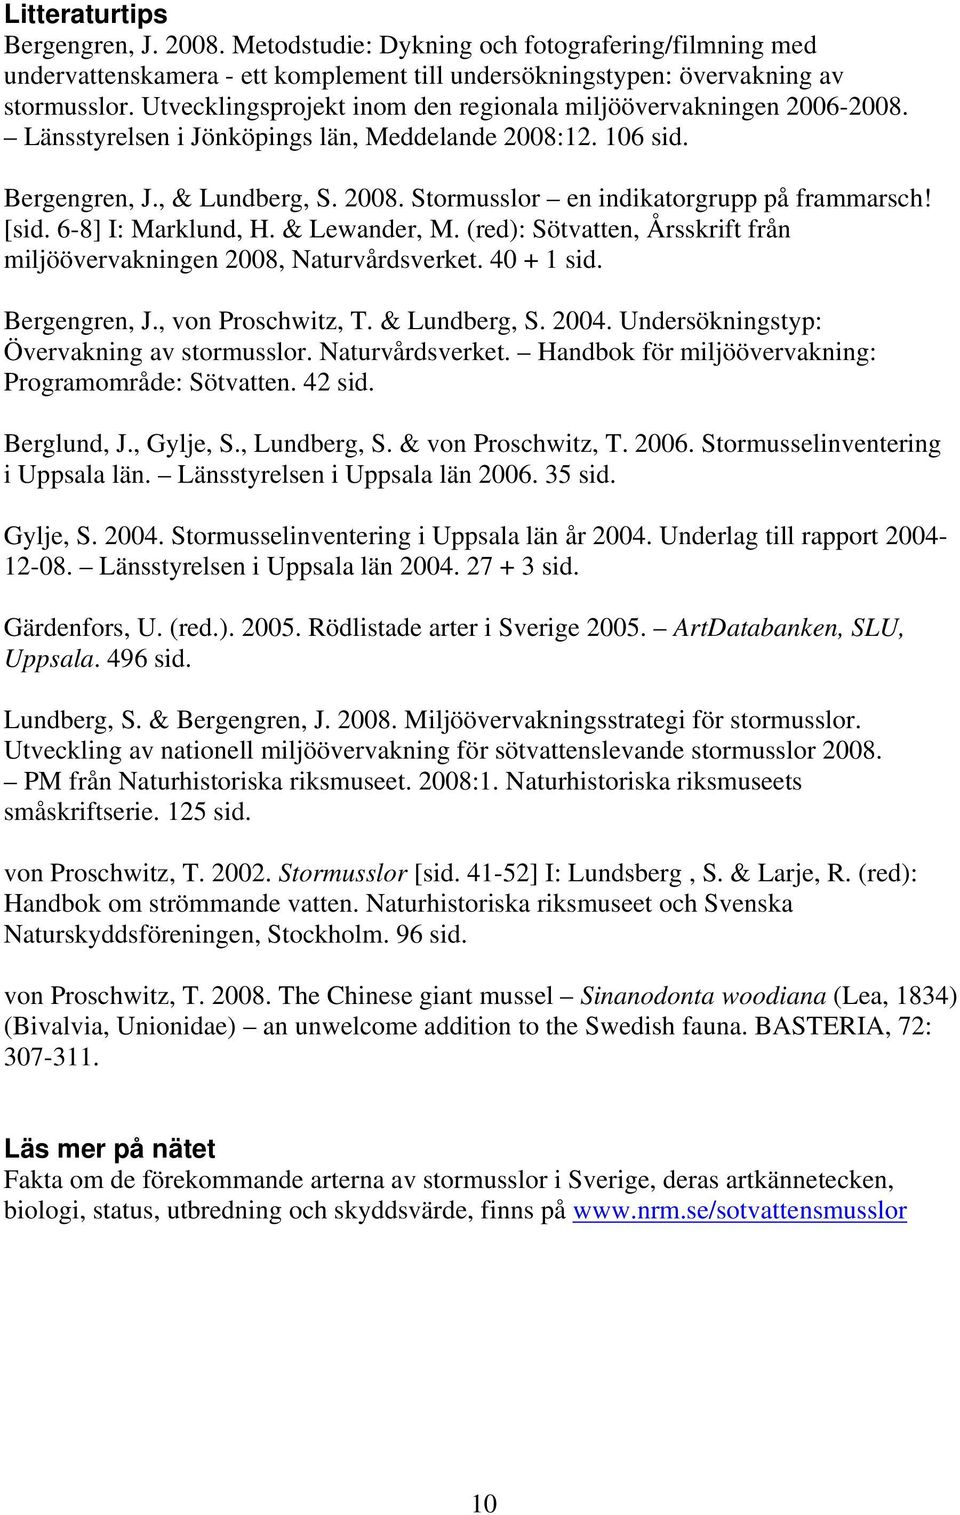 [sid. 6-8] I: Marklund, H. & Lewander, M. (red): Sötvatten, Årsskrift från miljöövervakningen 2008, Naturvårdsverket. 40 + 1 sid. Bergengren, J., von Proschwitz, T. & Lundberg, S. 2004.